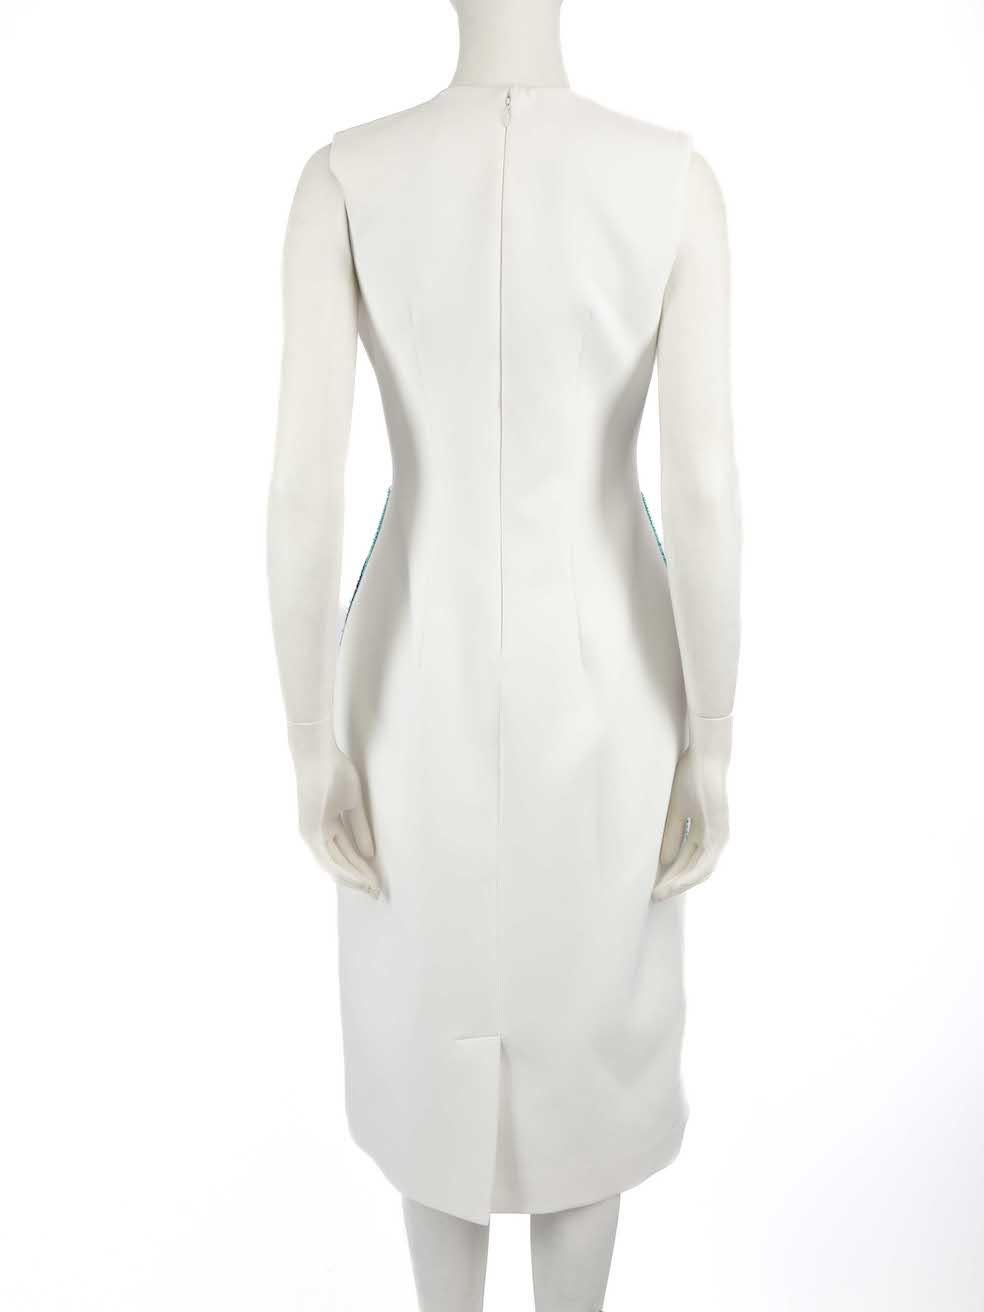 Honayda Robe blanche perlée longueur genou, taille L Pour femmes en vente